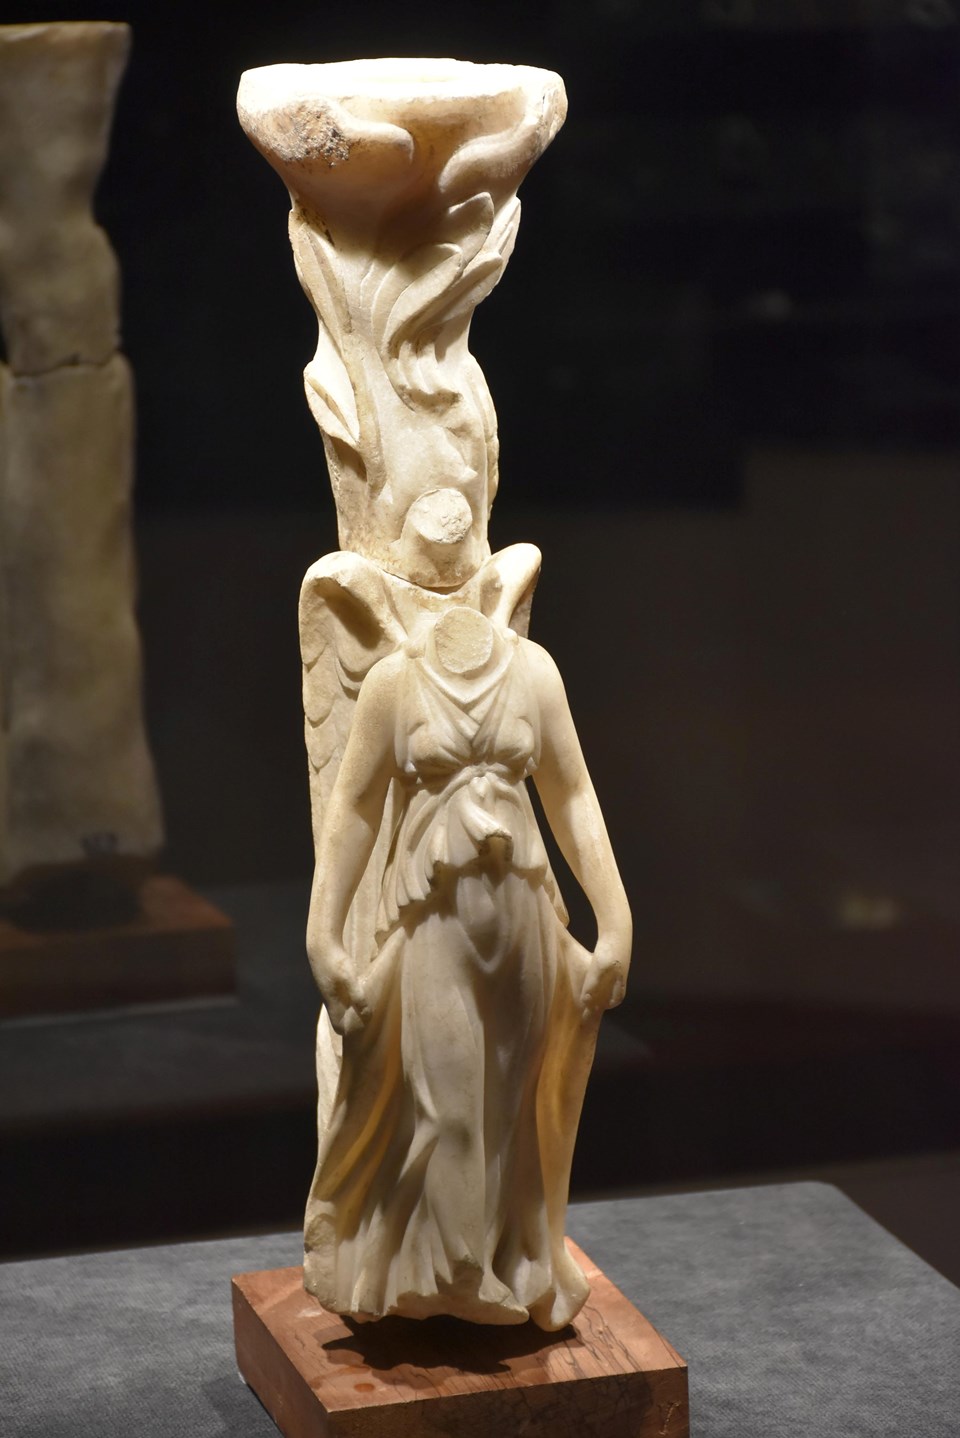 Nike tanrıçasına ait heykel 1 asır sonra sergide - 1